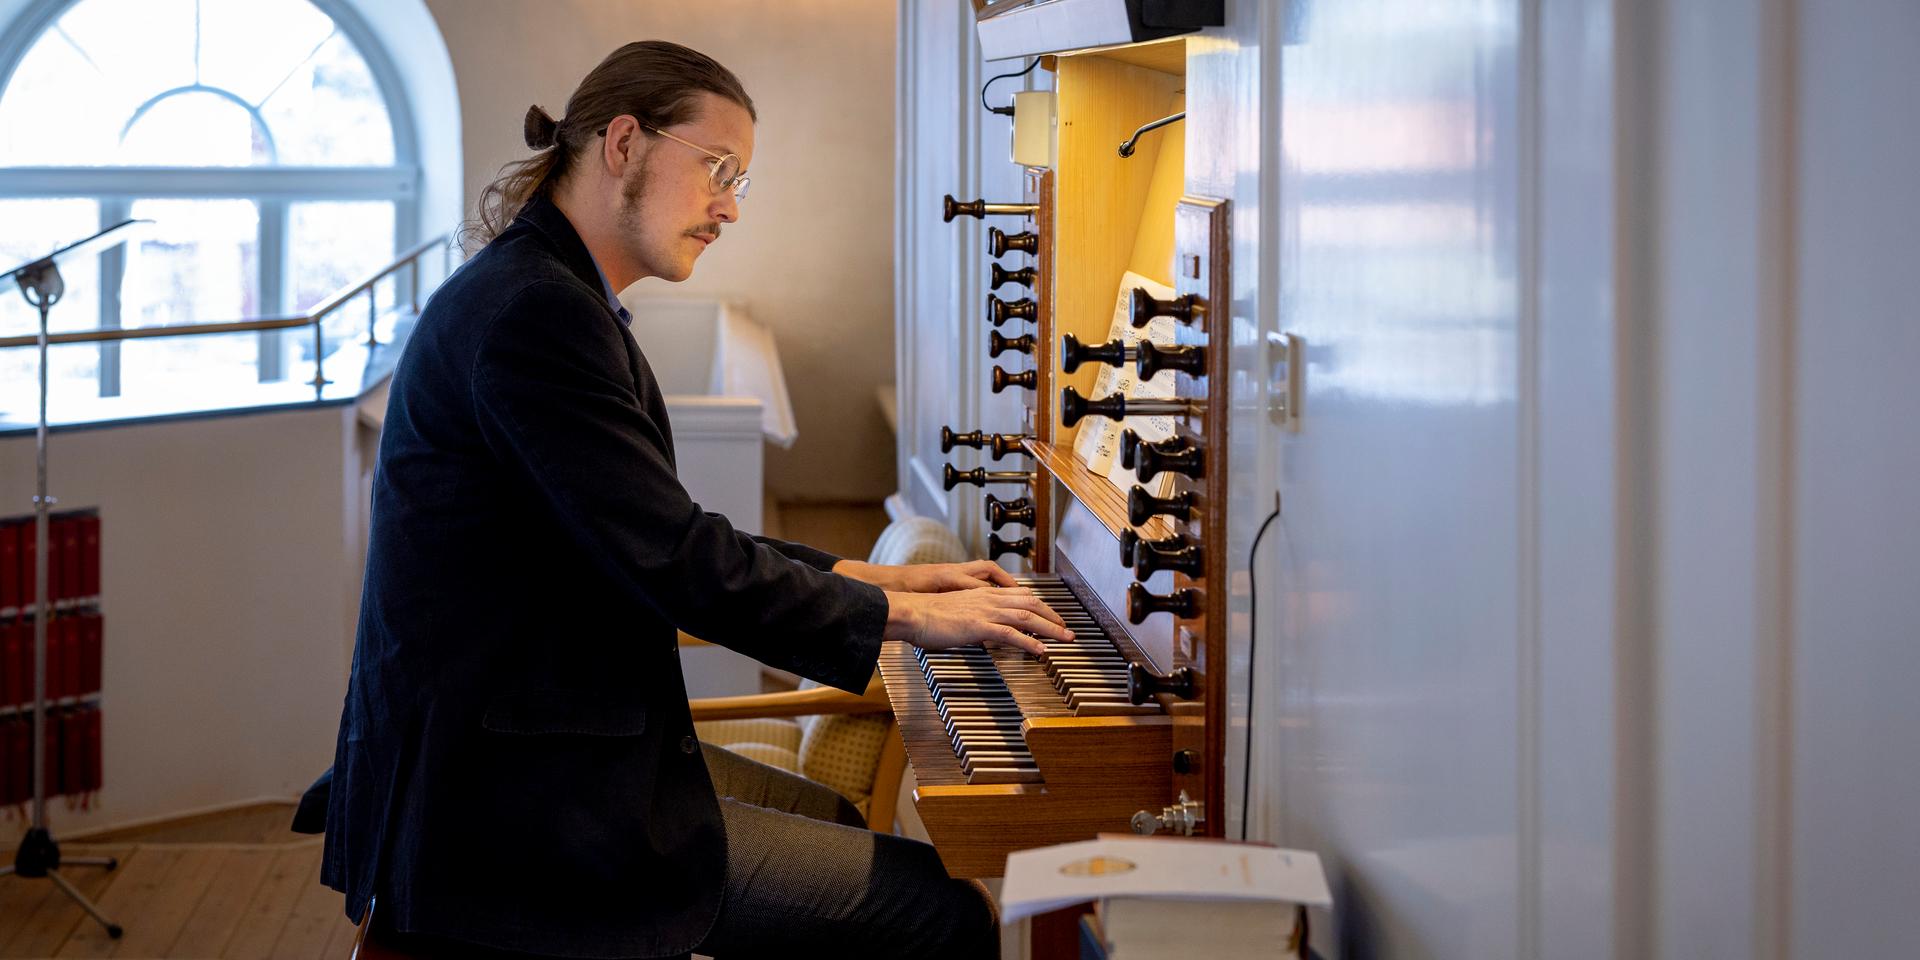  Vid sidan av livet som kyrkomusiker har Leander Franke också bedrivit musikforskning, något som nu övergått till en doktorandtjänst vid Åbo Akademi och innebär att han i höst lämnar Tölö. 